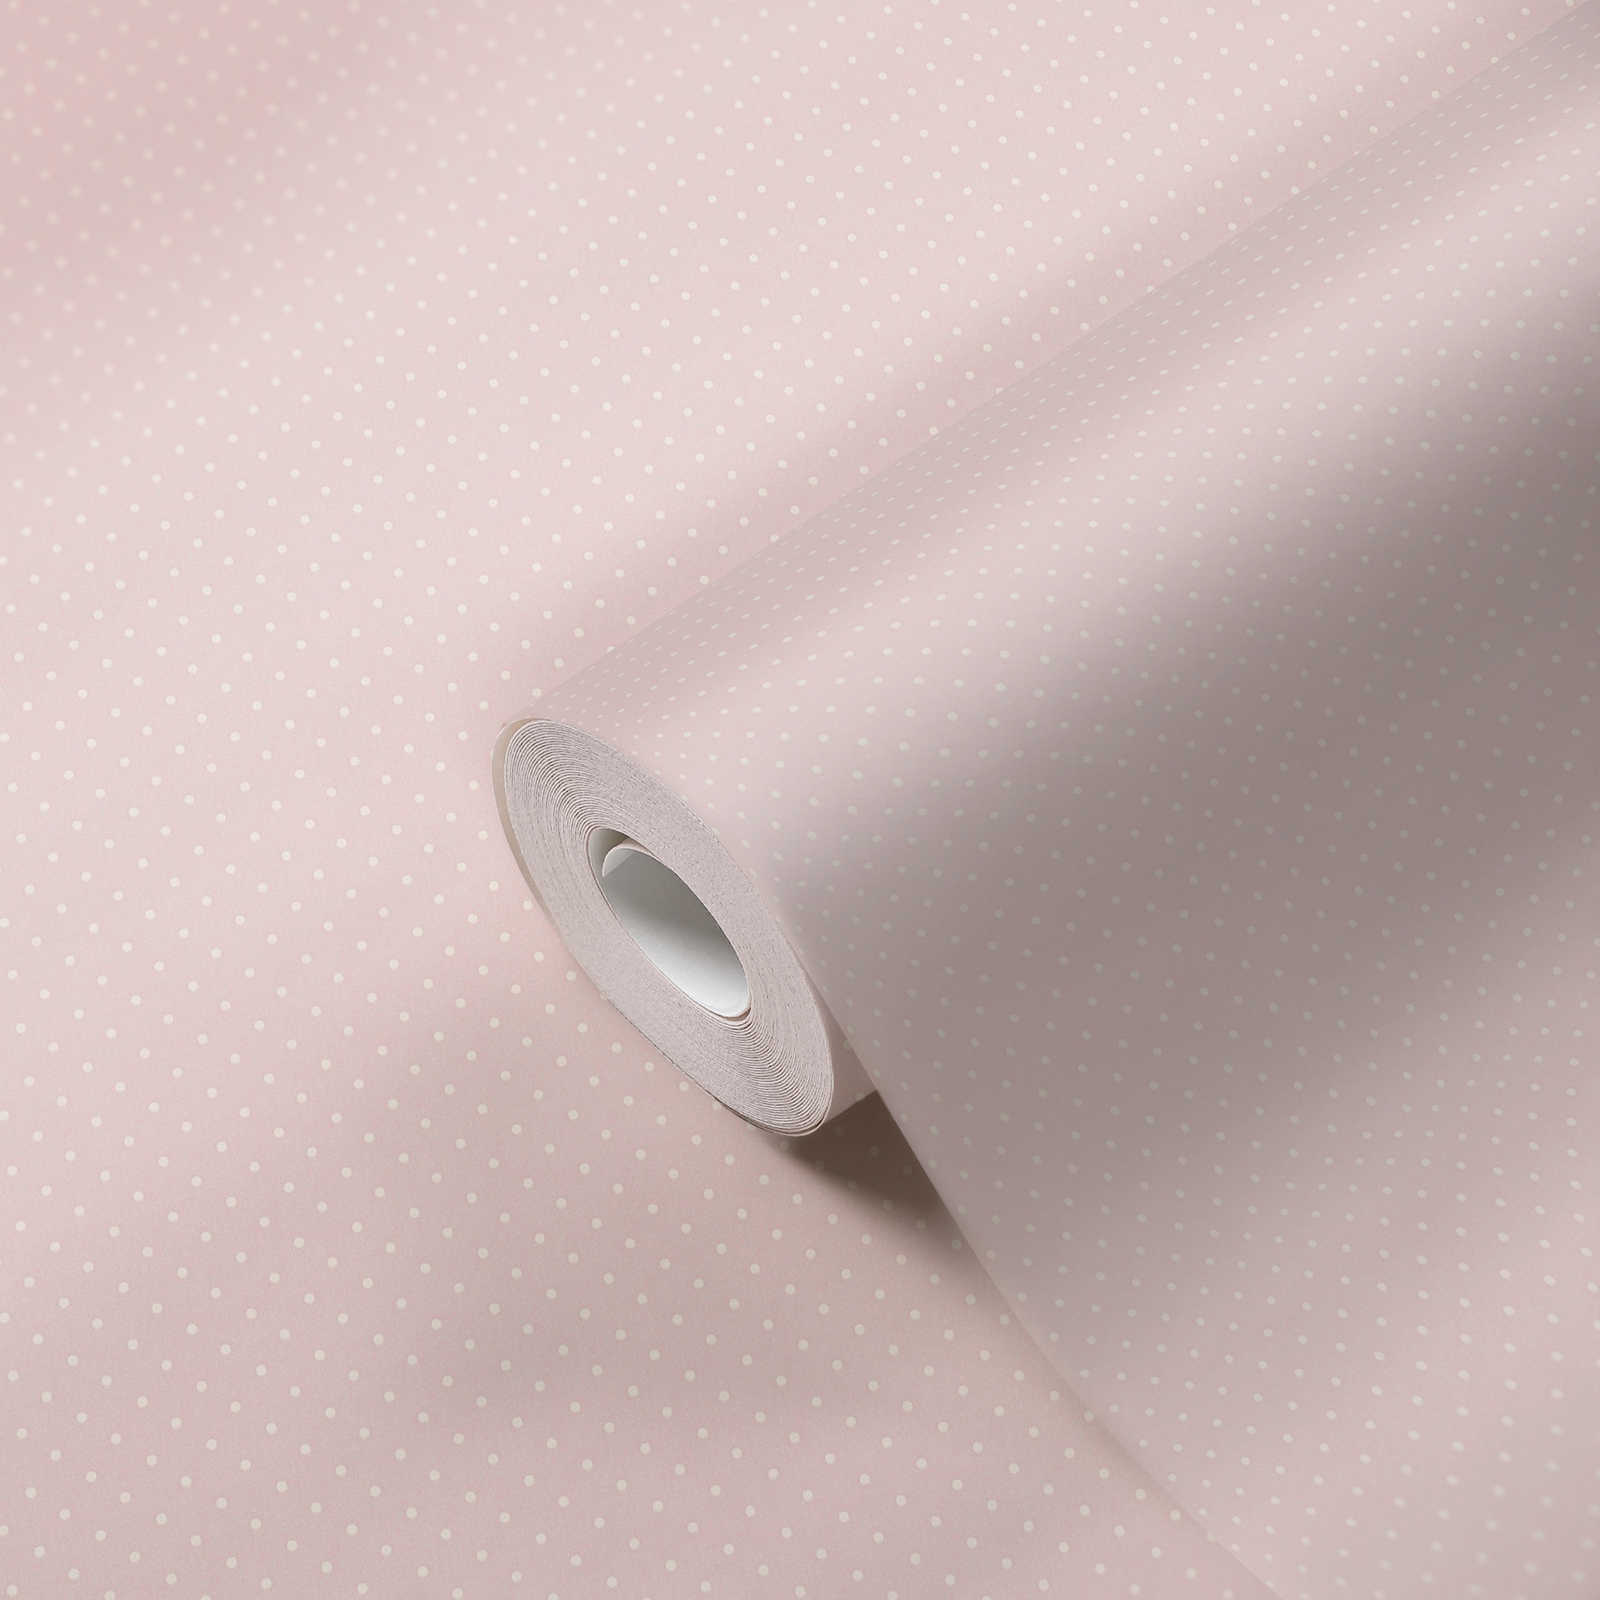             Onderlaag behang in landelijke stijl met kleine stippen - roze, wit
        